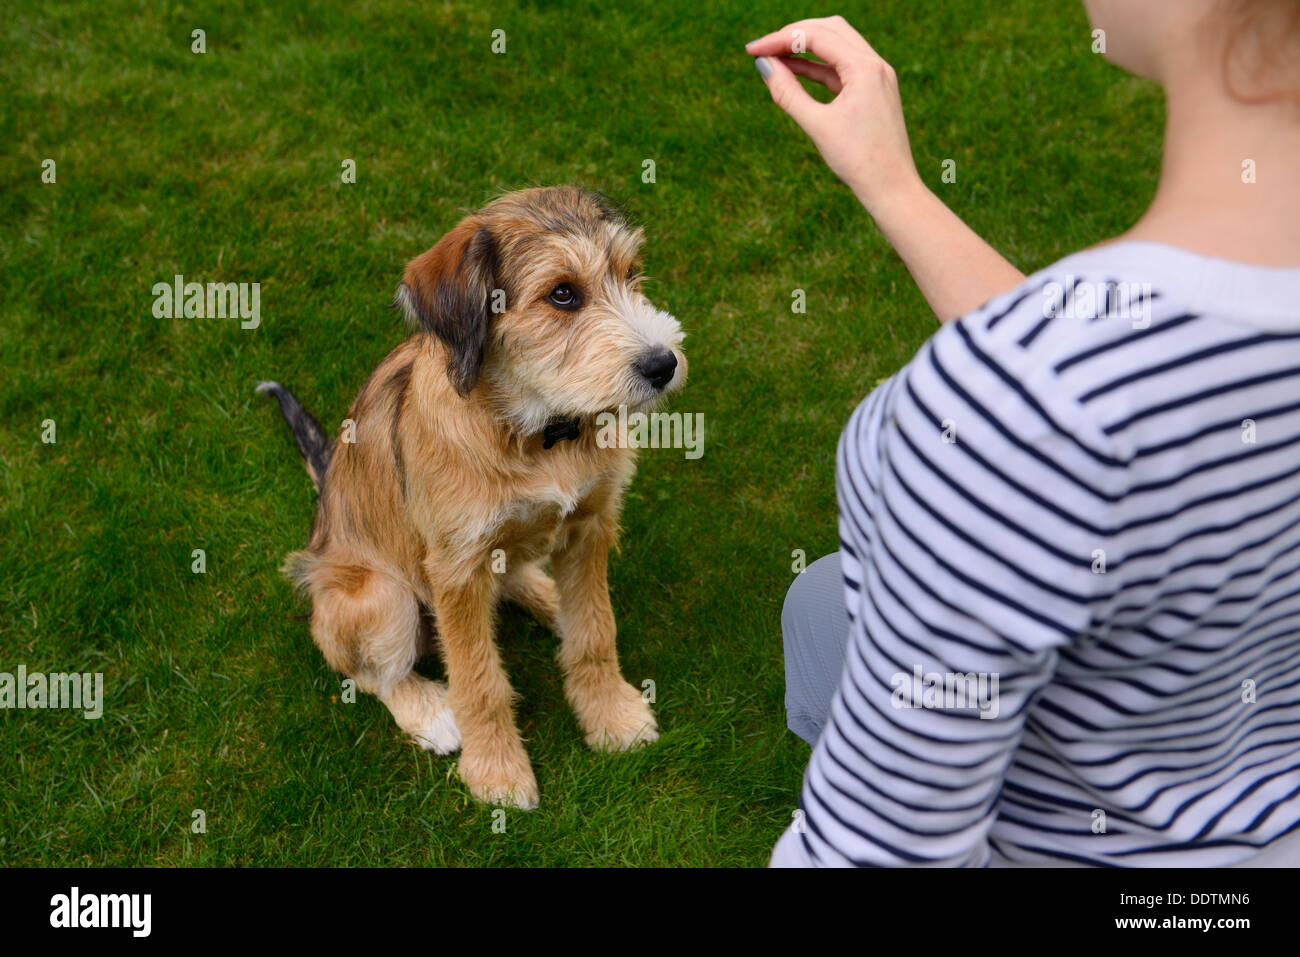 Sheepish giovane cucciolo essendo formati da giovane donna di sedersi sull'erba del prato Foto Stock